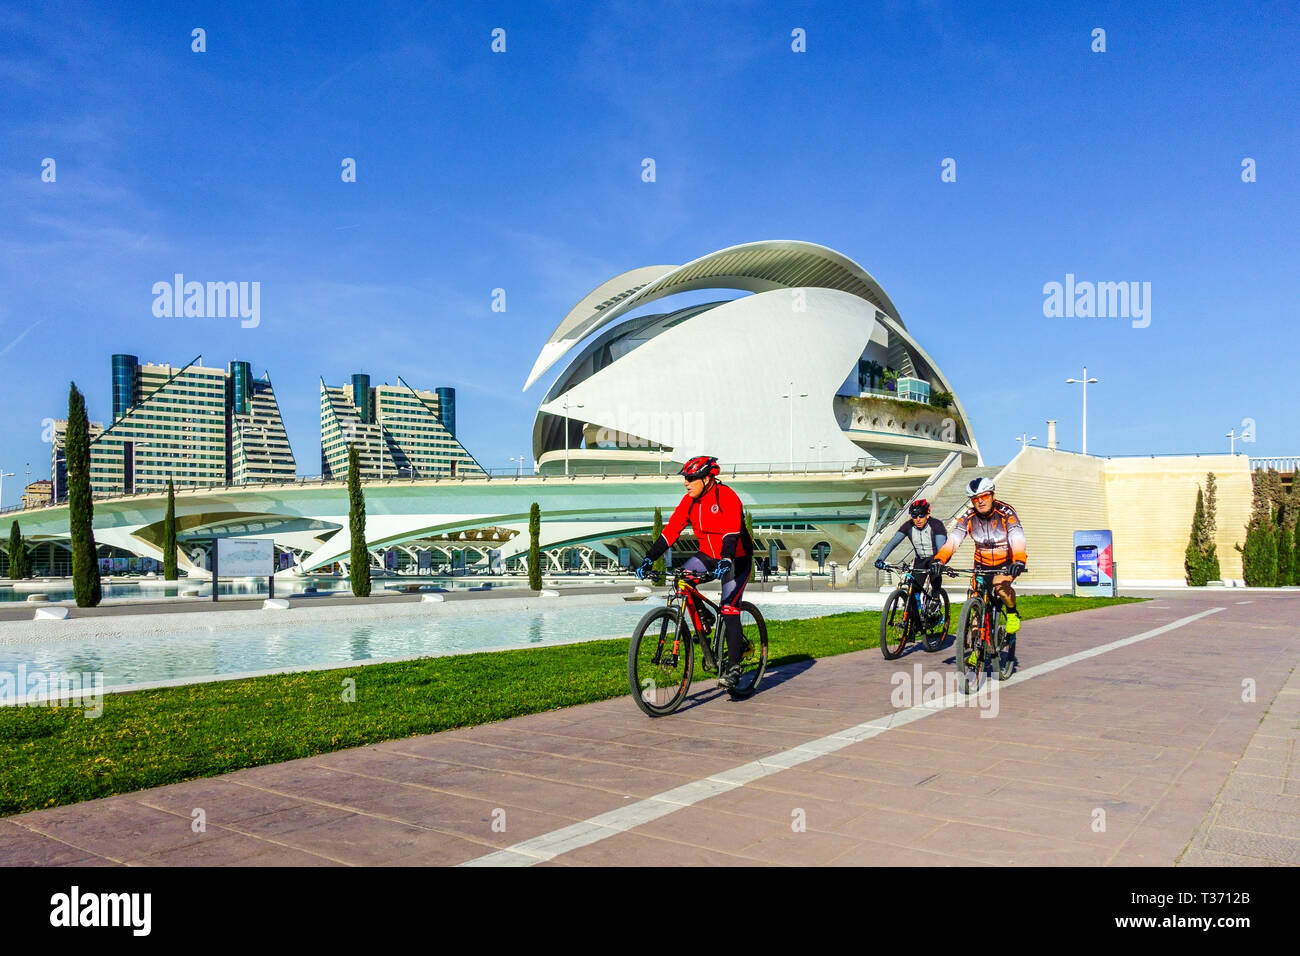 Spanien Valencia Stadt der Künste und Wissenschaften, Radfahrer auf Fahrrädern, Valencia Turia Park Menschen radeln in einem modernen, modernen Place Bike Lane Stockfoto